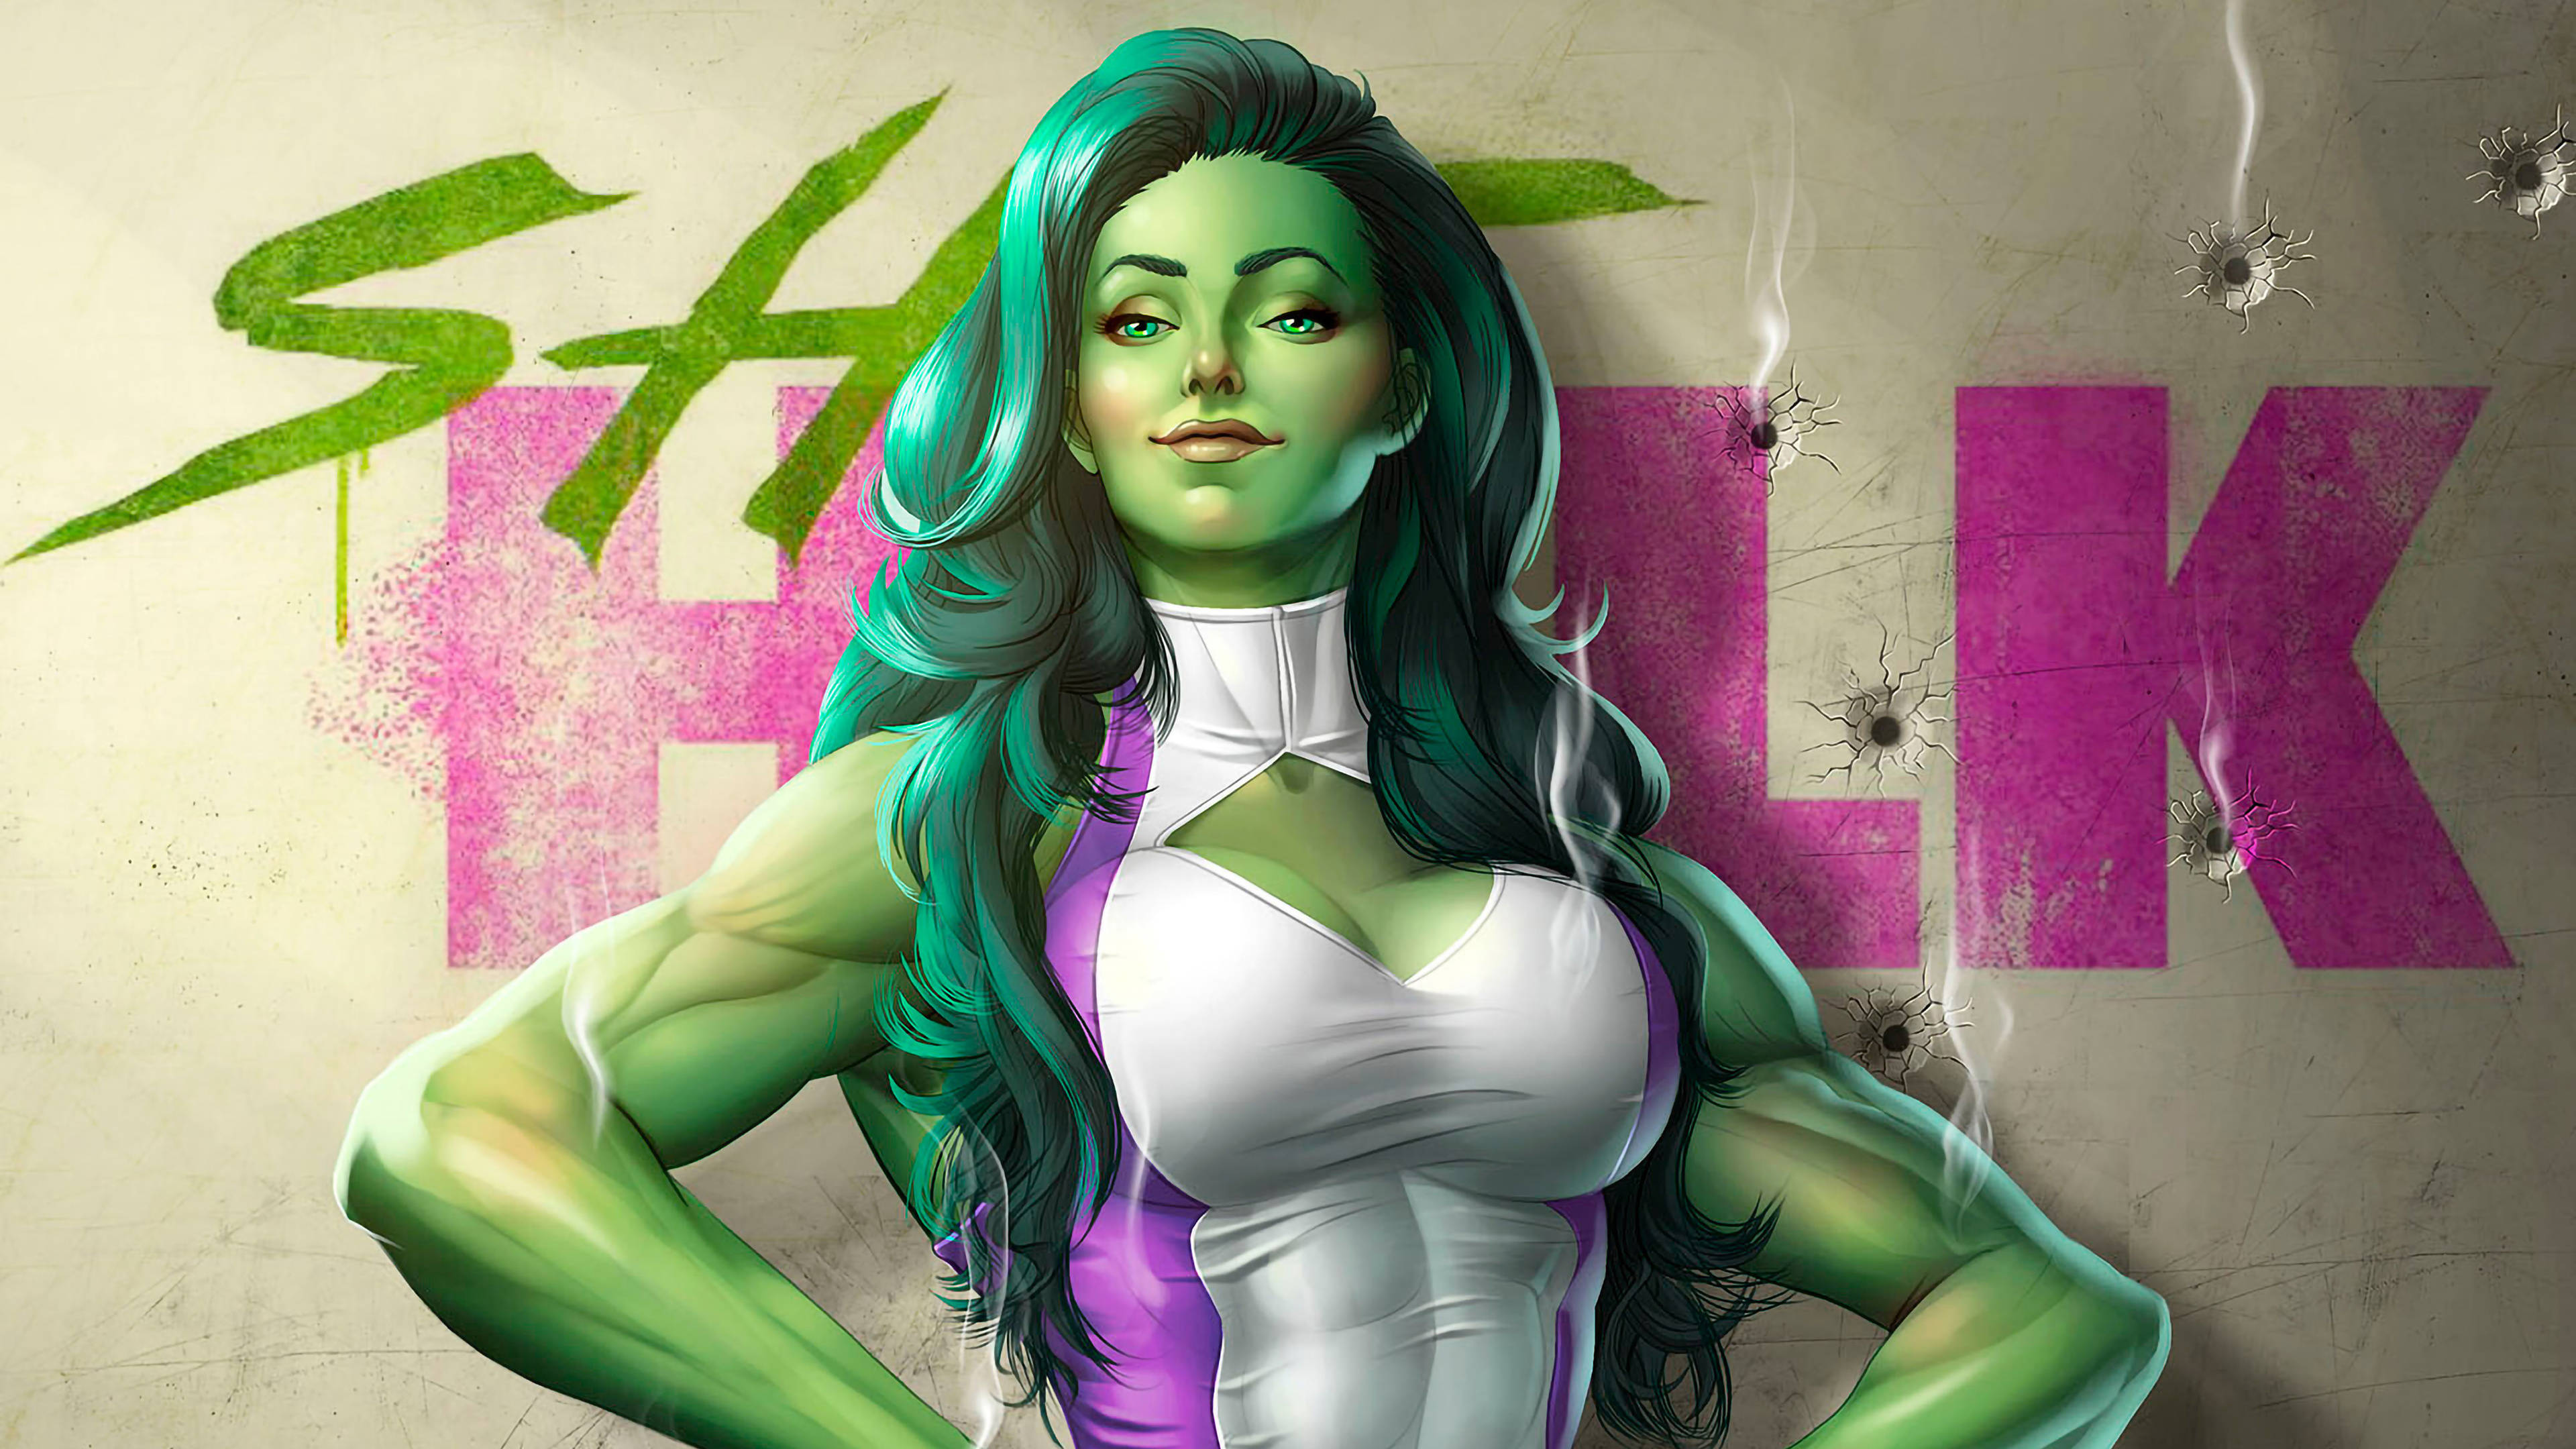 She Hulk Wallpaper & Background For FREE